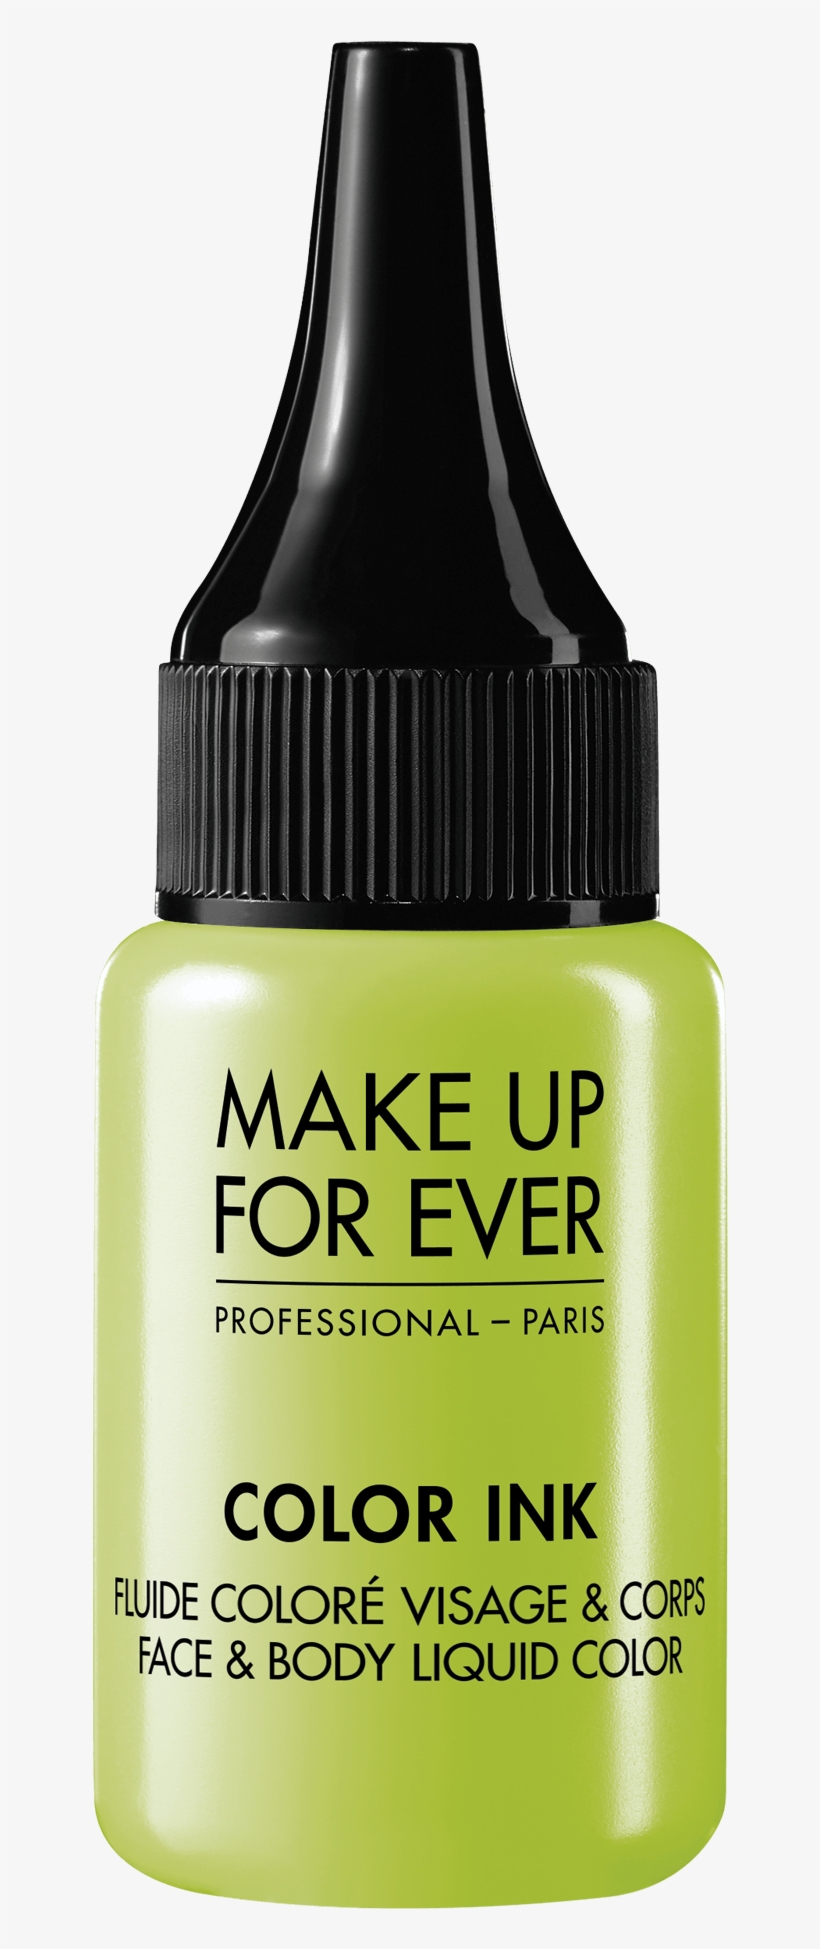 Make Up For Ever Color Ink, transparent png #7750684